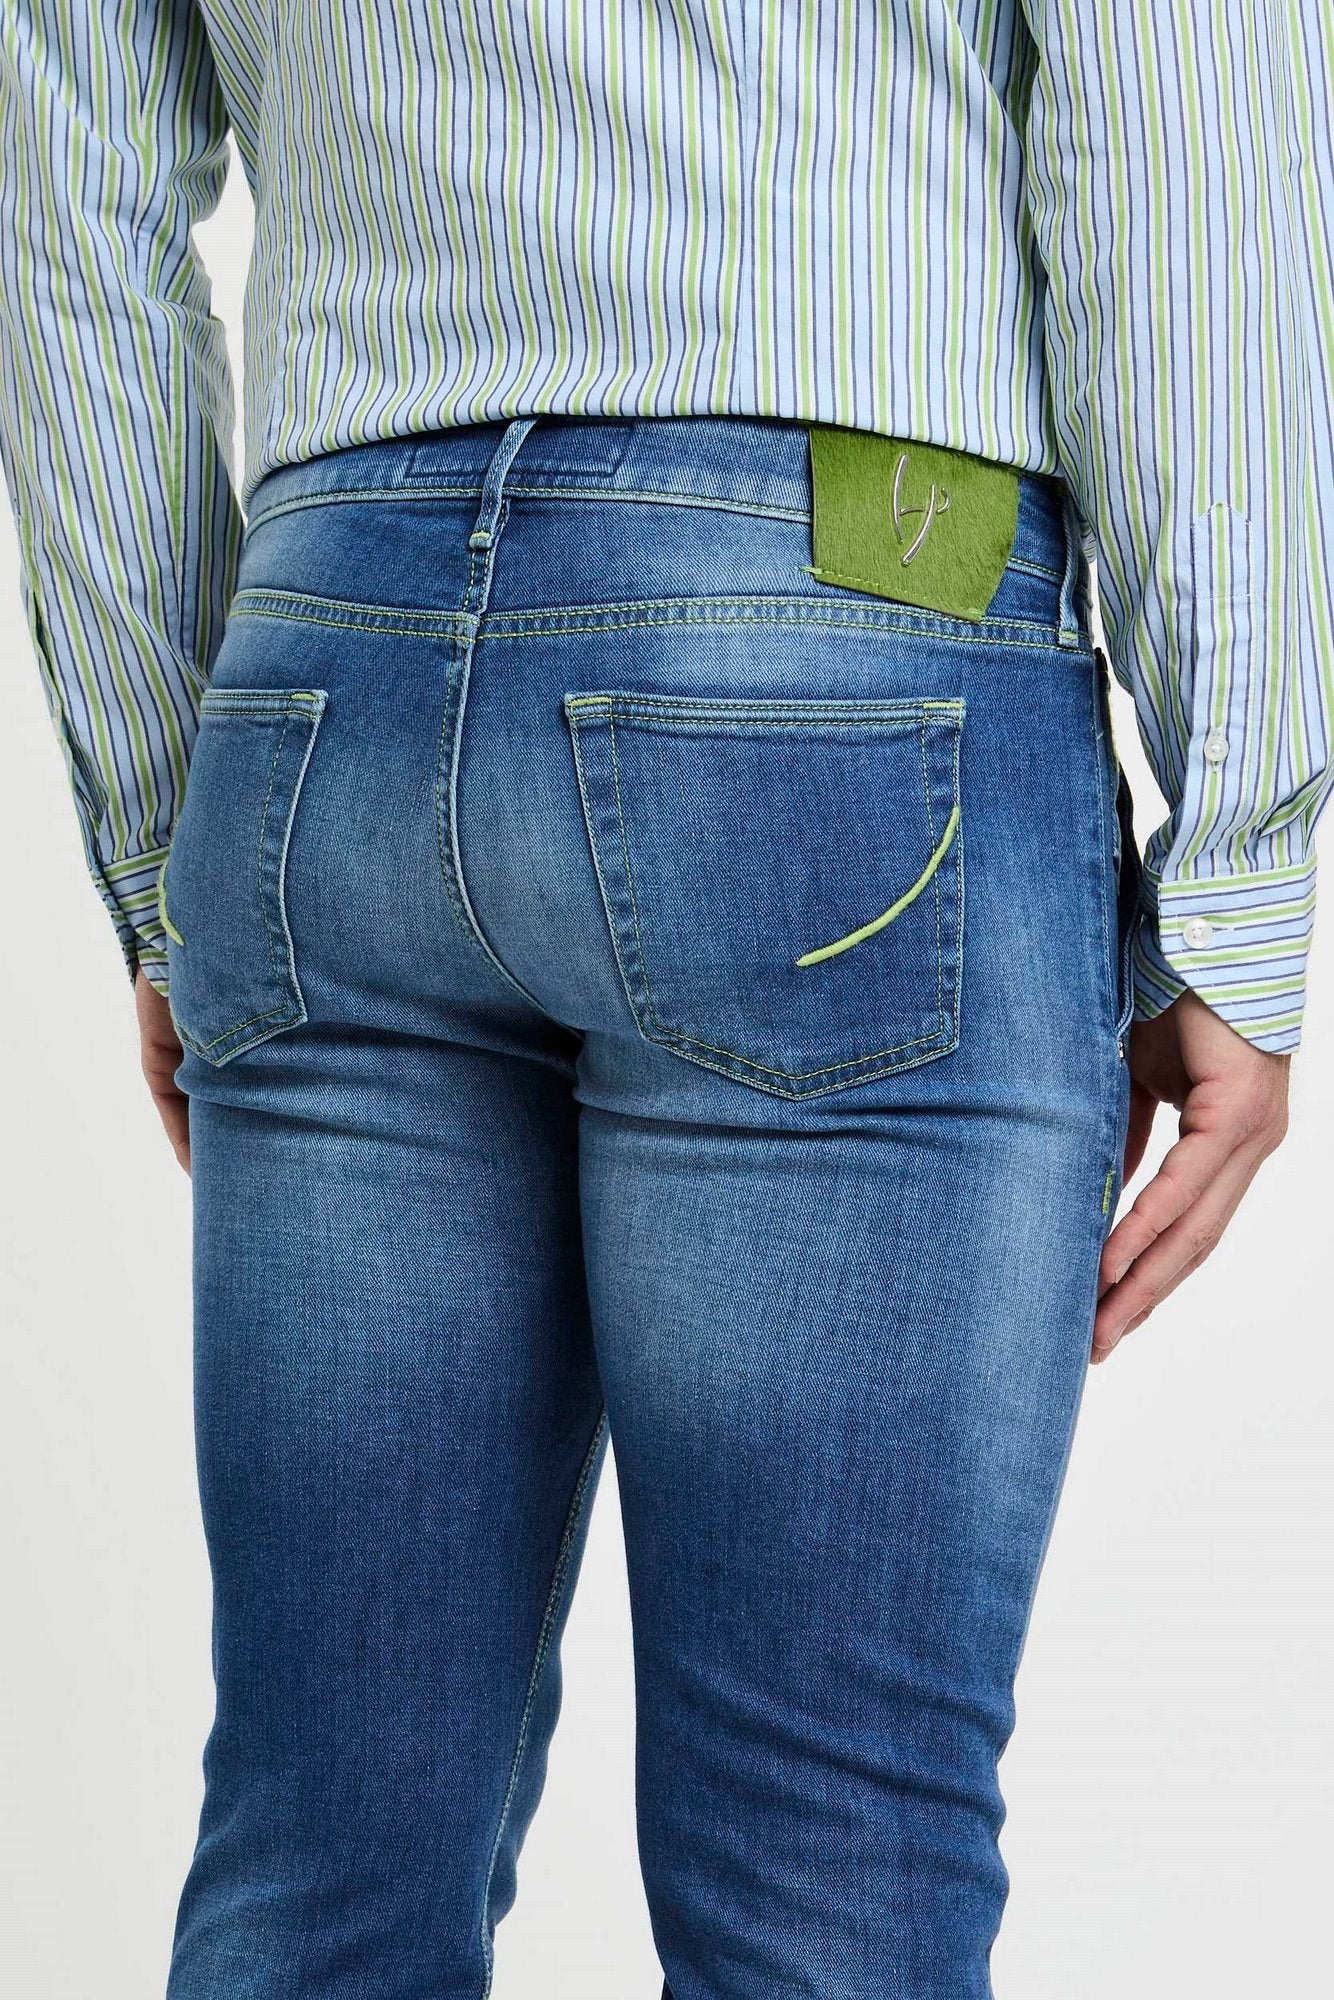 Handpicked Jeans Parma aus Denim-Baumwolle-6